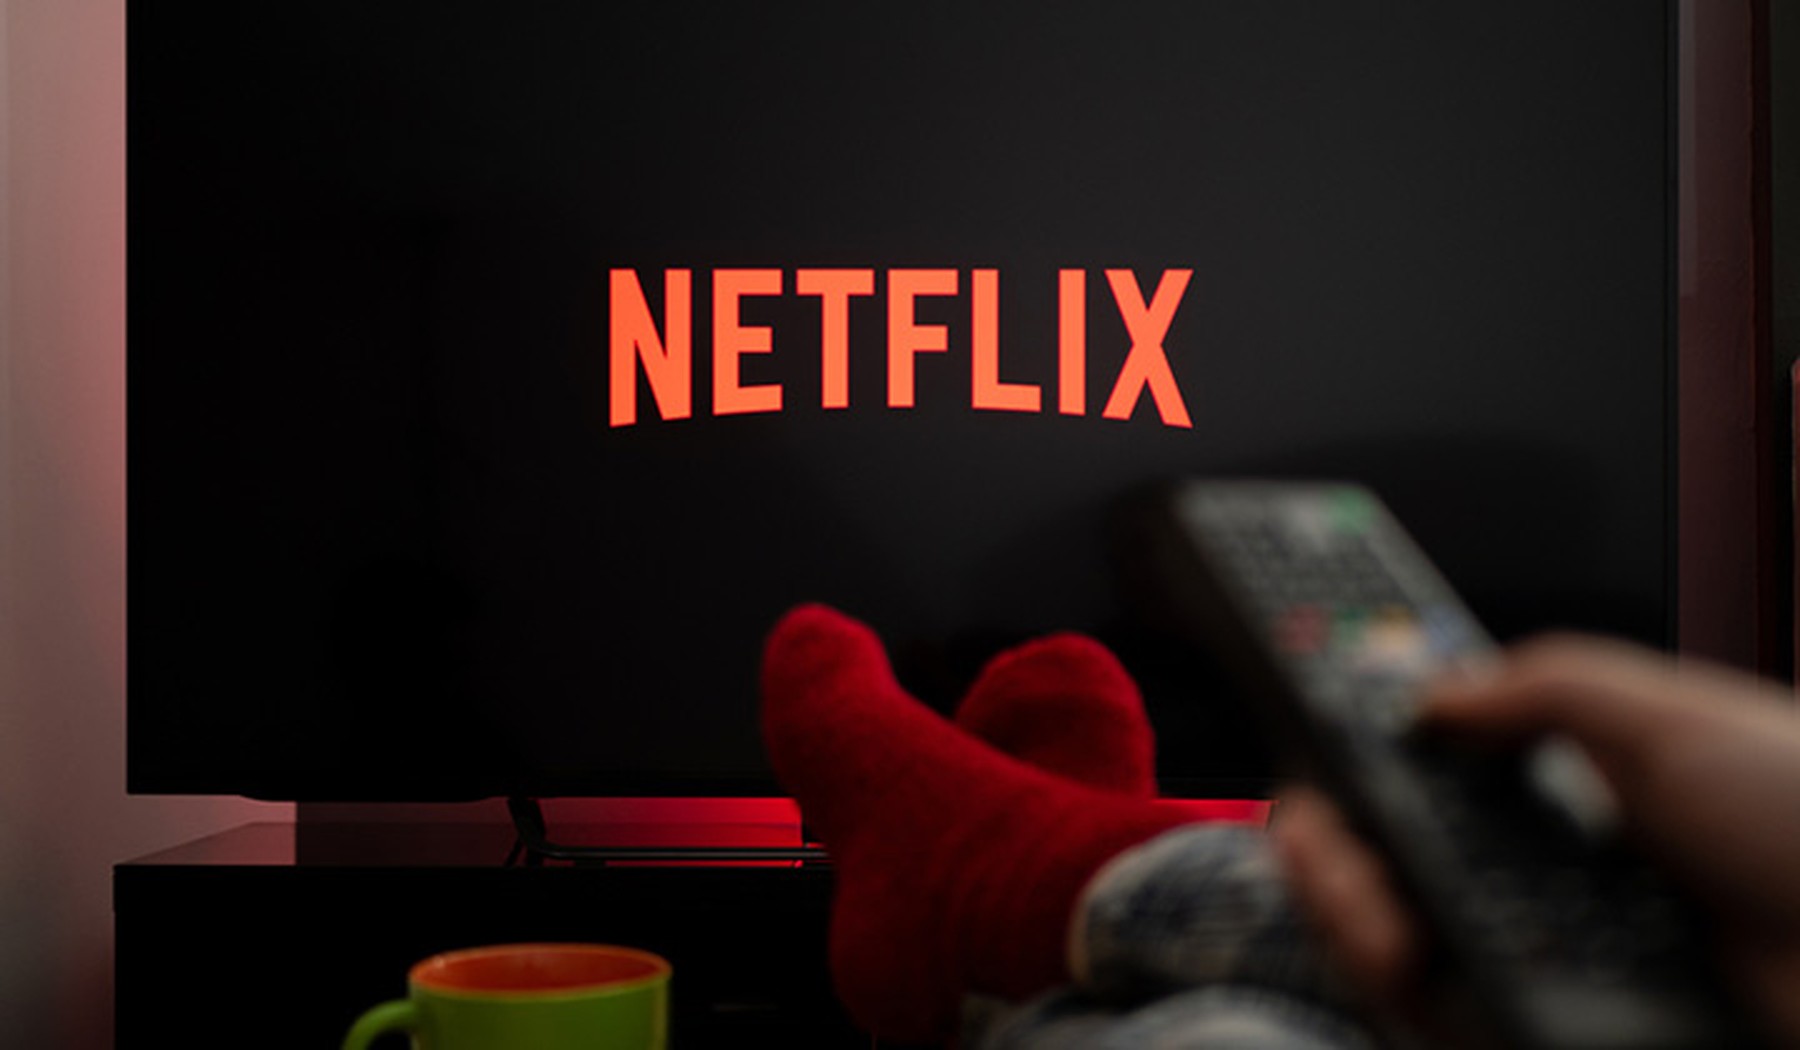 Pantalla de televisión con el logo de Netflix y una persona con calcetines rojos usando el mando de la TV